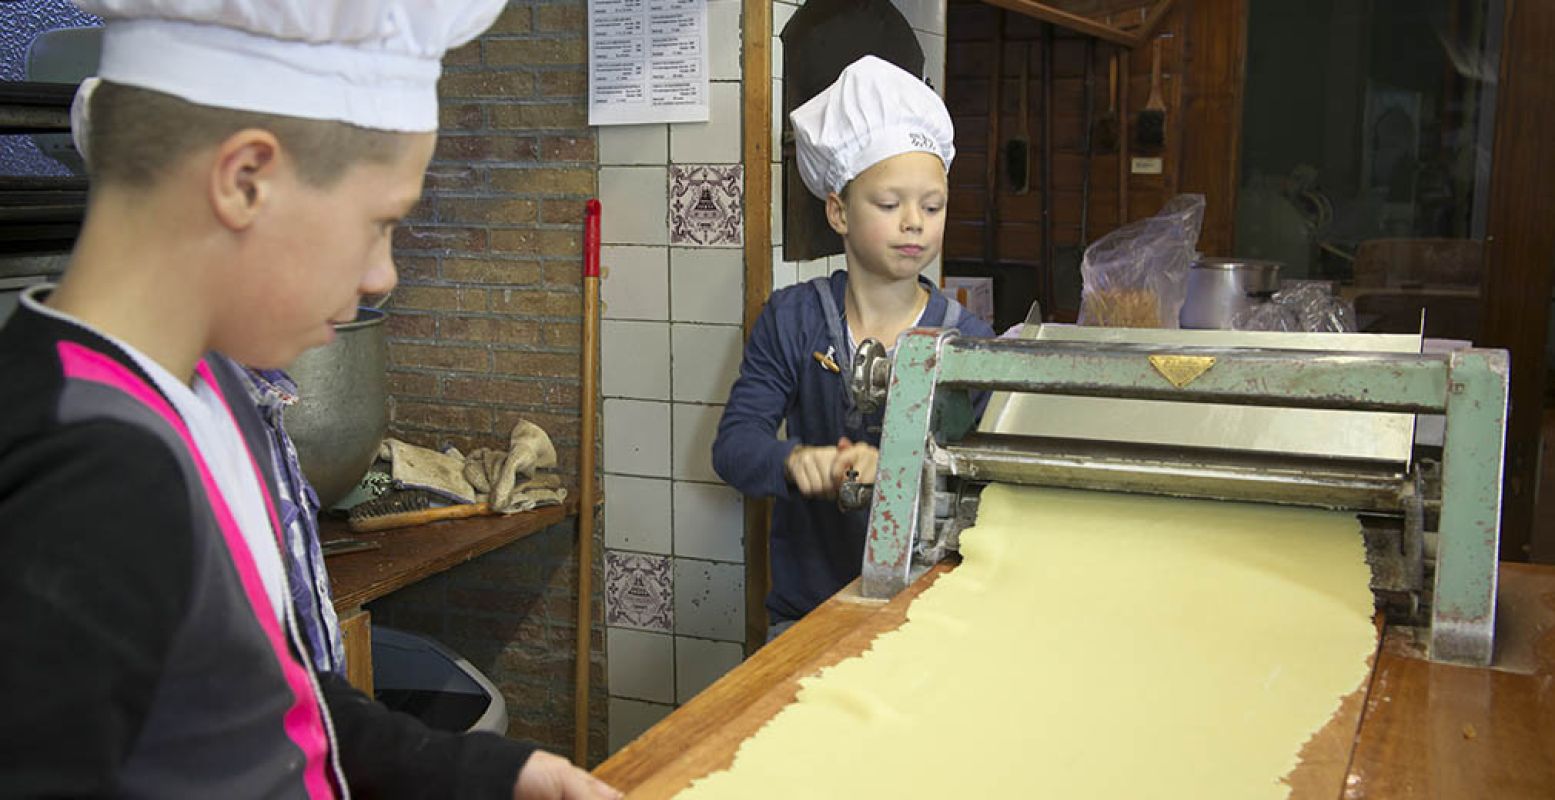 Lekker warm in de keuken als bakker aan de slag. Foto: Bakkerijmuseum De Oude Bakkerij.